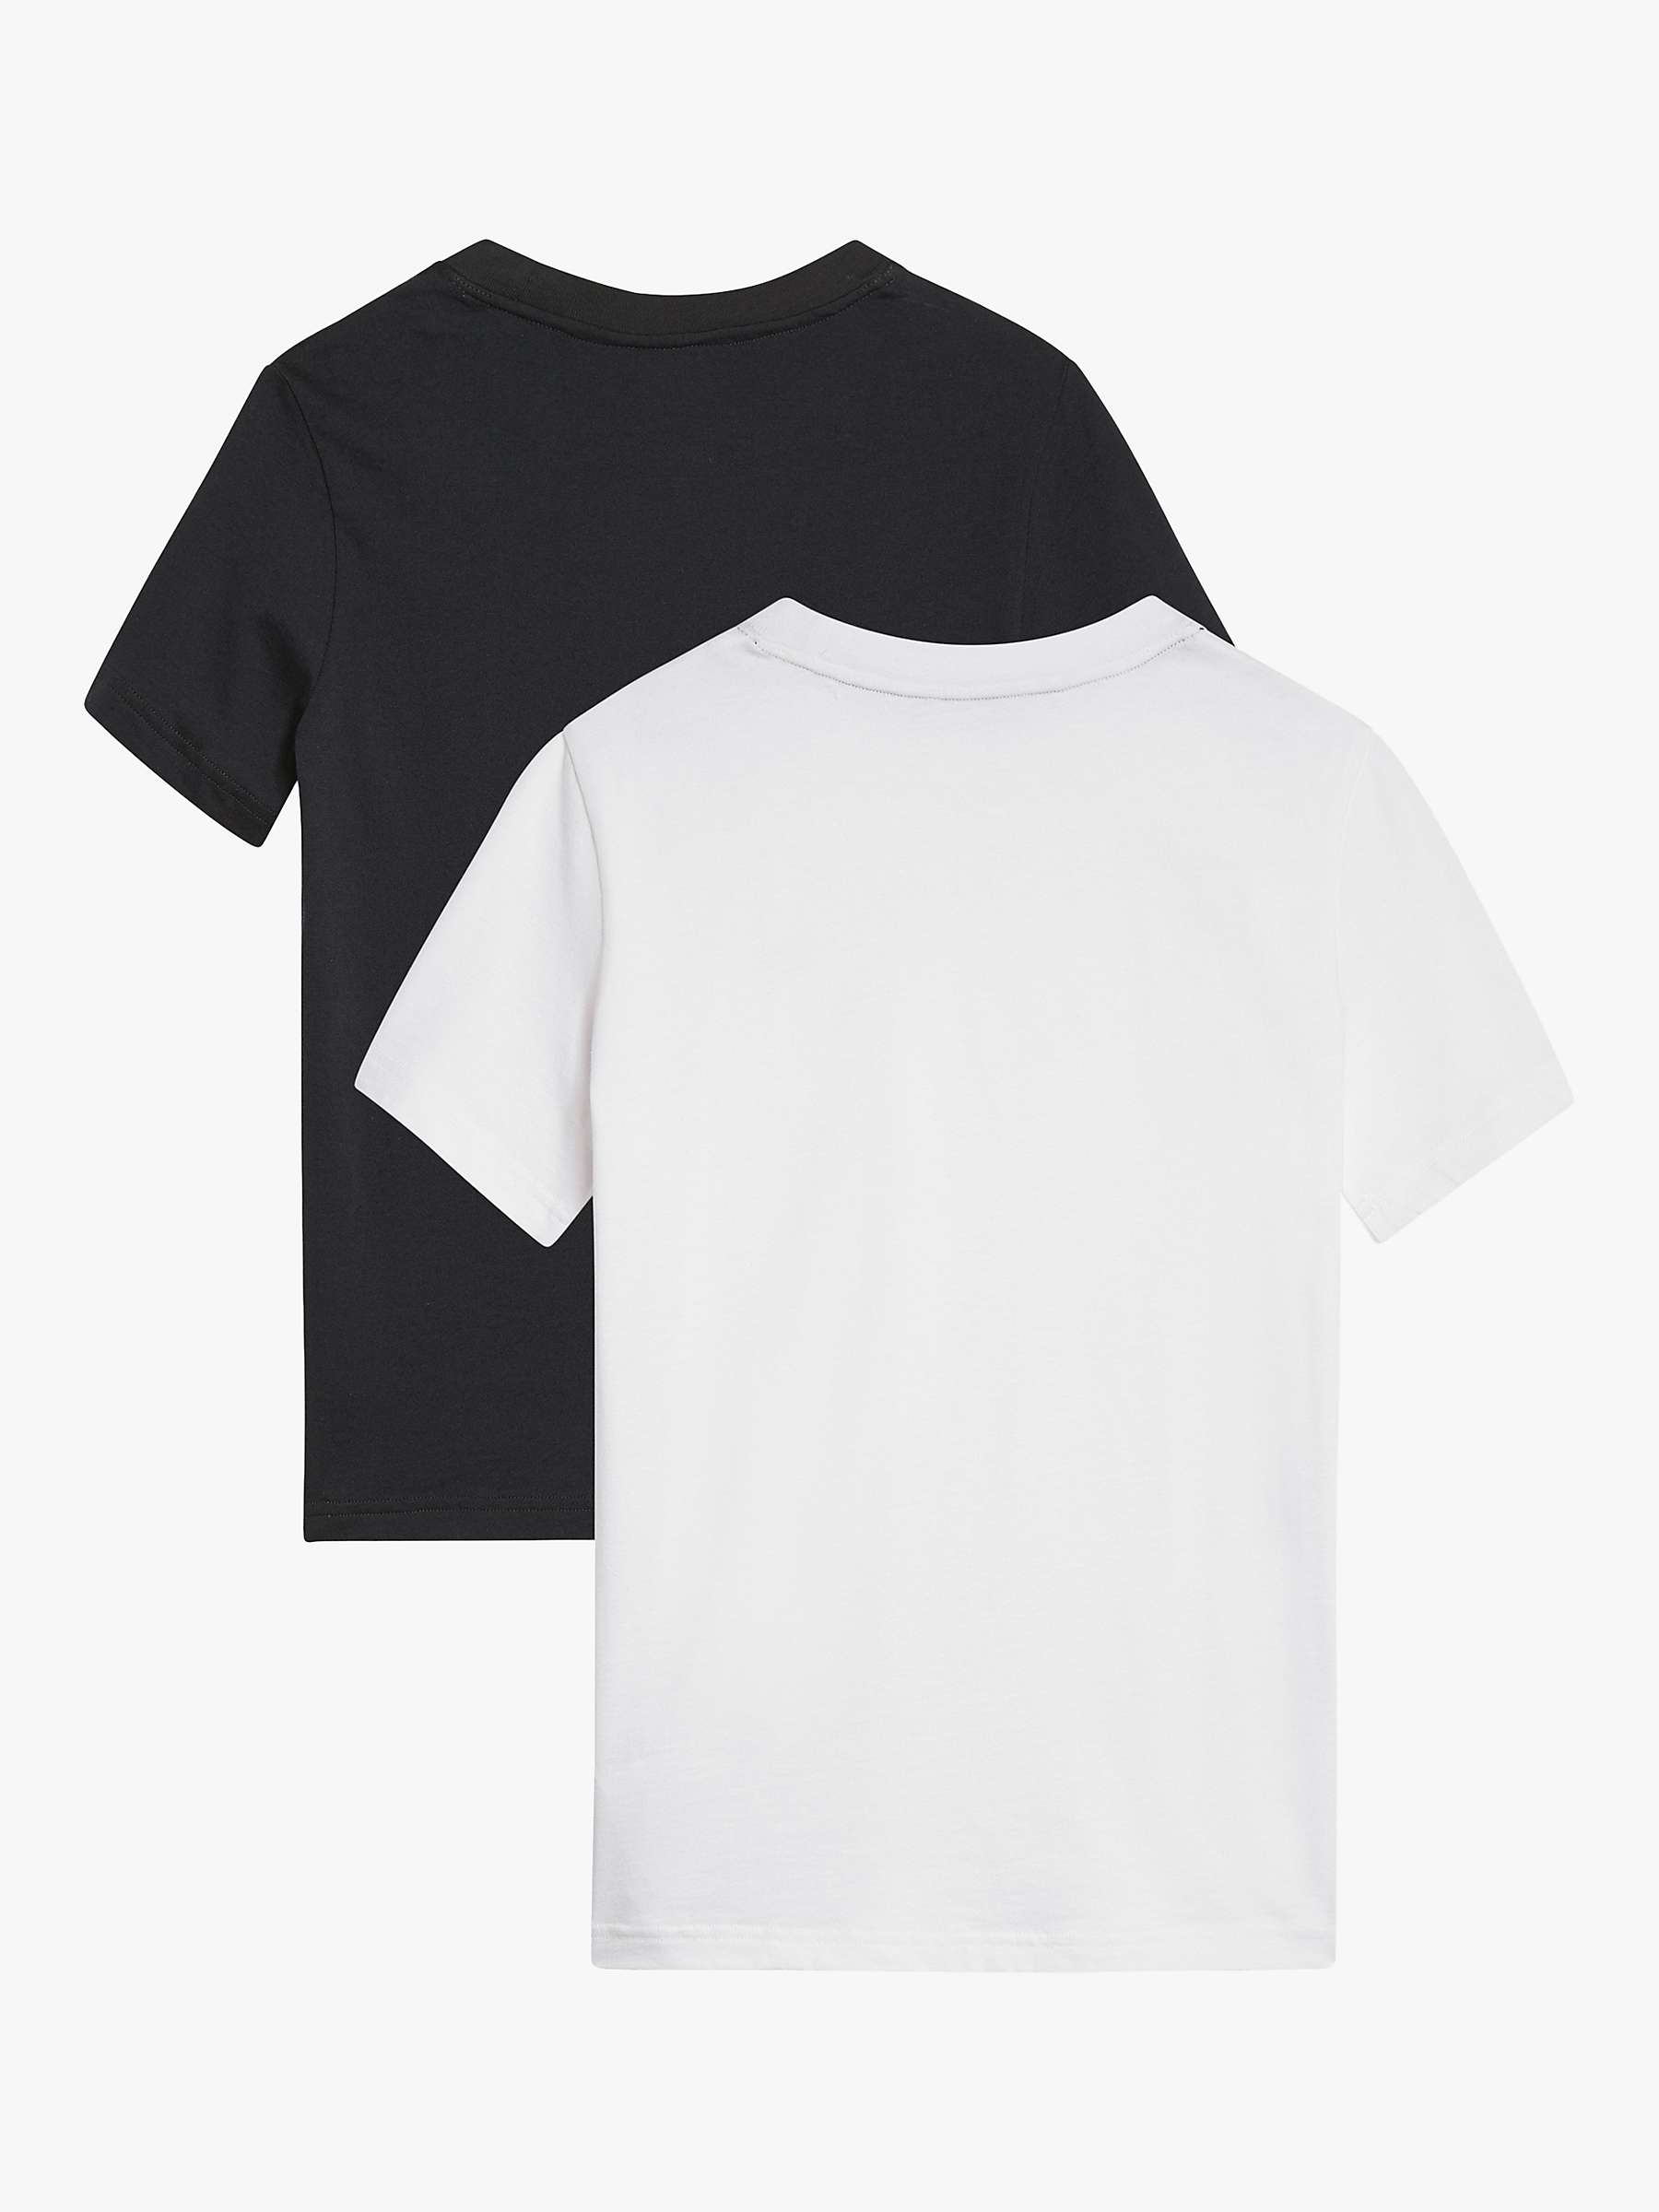 Buy Tommy Hilfiger Kids' Plain Logo T-Shirts, Pack of 2 Online at johnlewis.com